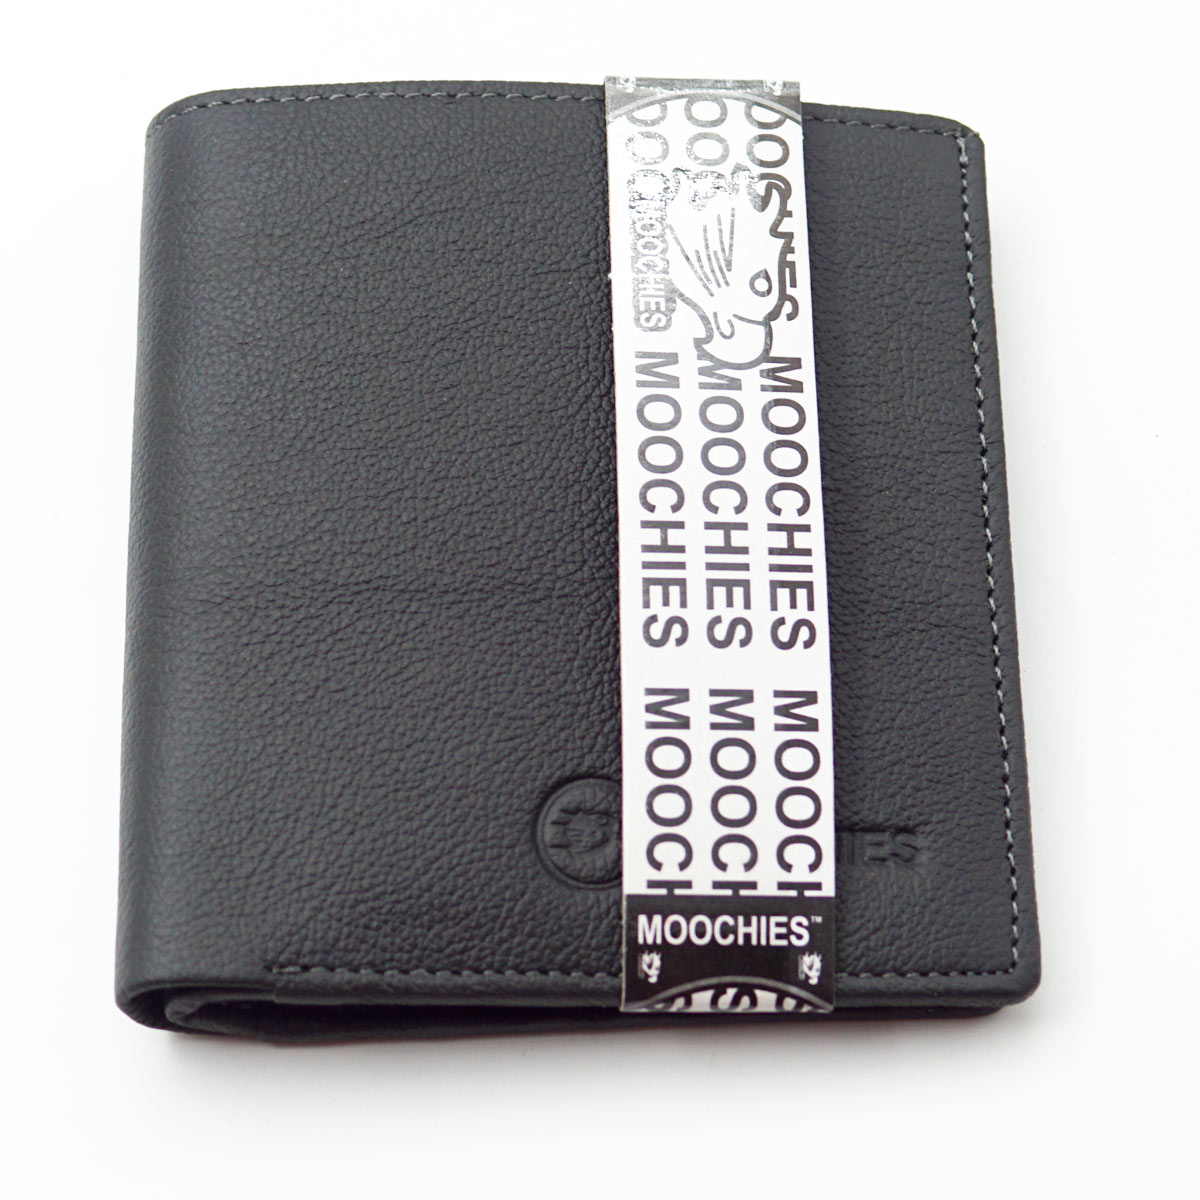 Moochies Dark Grey Color Leather Purse SKU - 65111